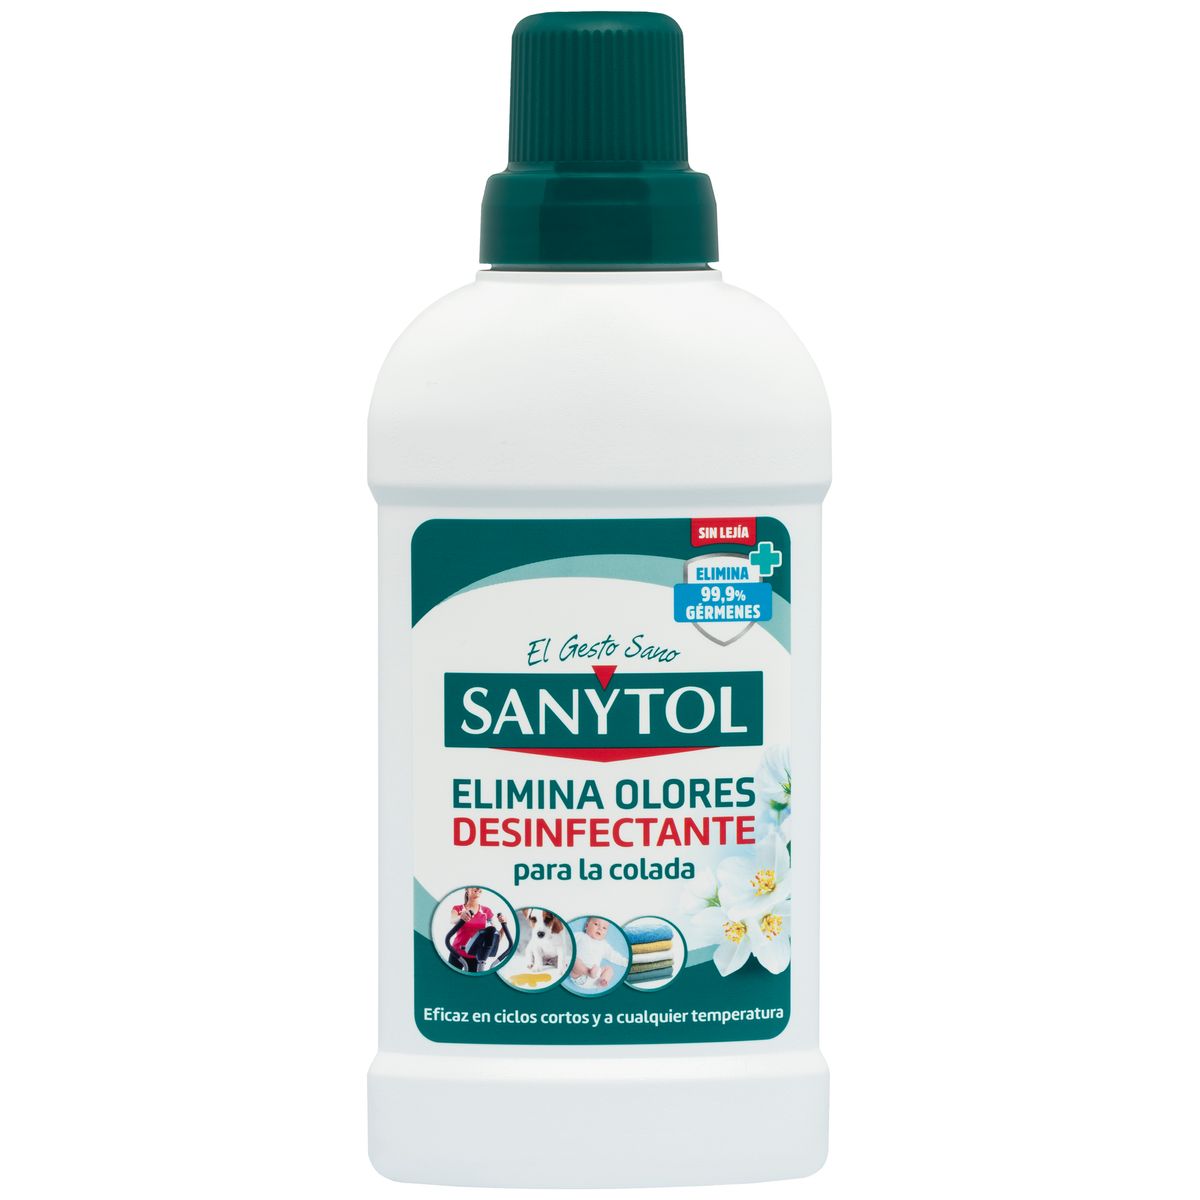 Opinión de 2.500 consumidores sobre Sanytol Multiusos - Sanytol